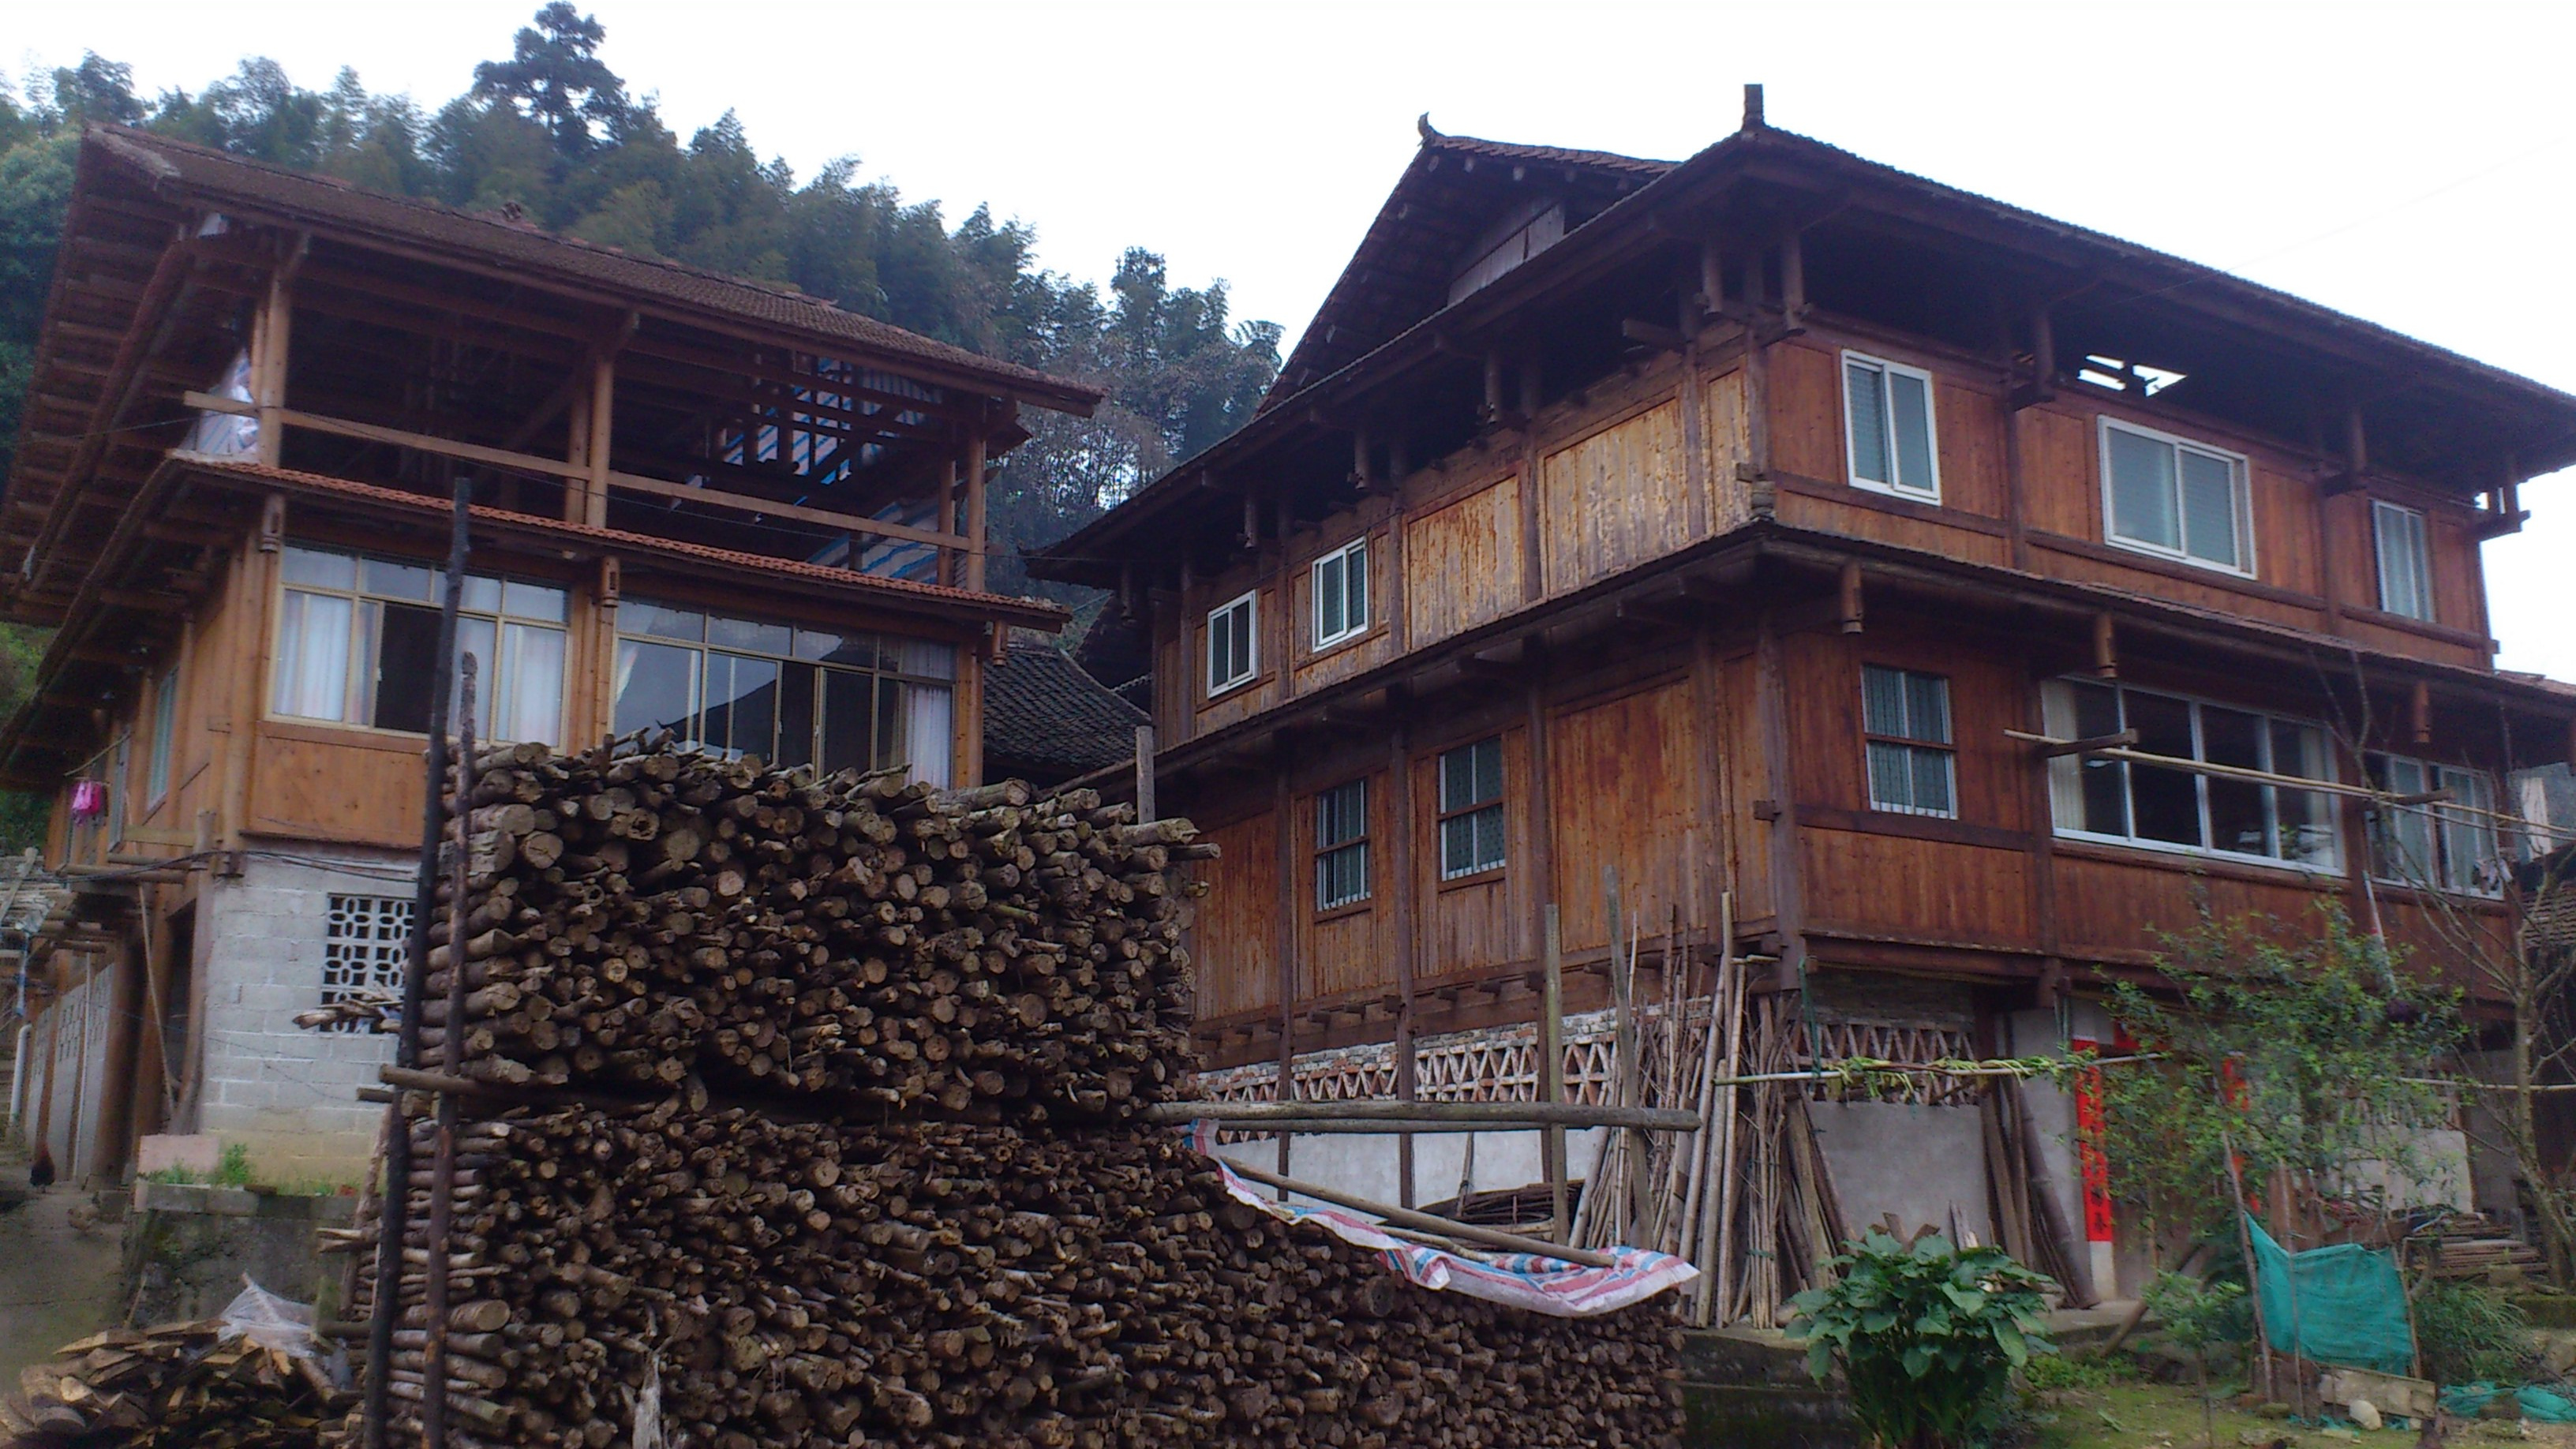 广西传统民居建筑特色图片